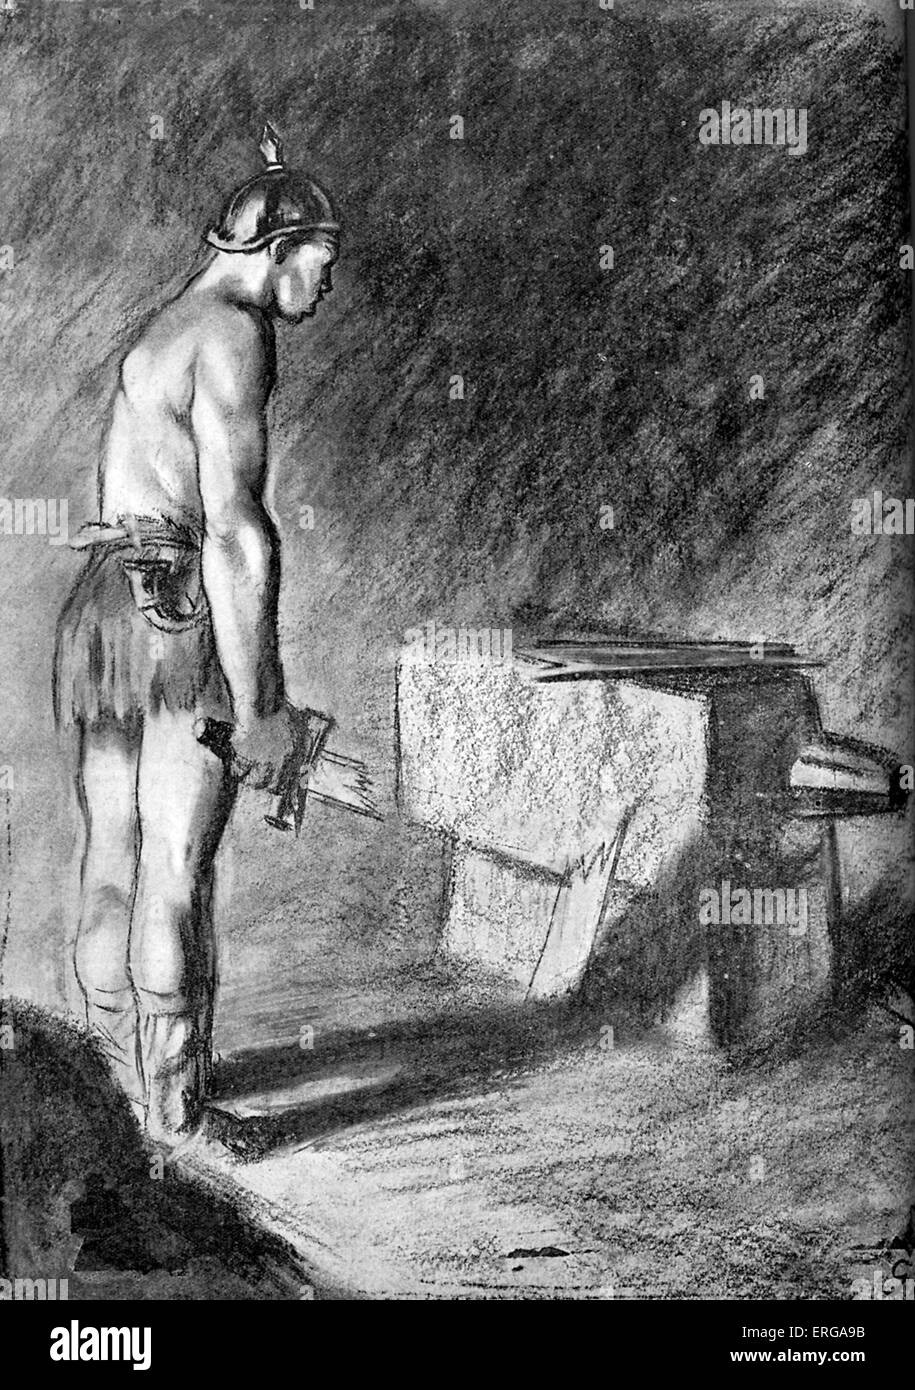 La faiblesse militaire prussien - la Première Guerre mondiale, la caricature (britannique). L'épée symbolique de soldat prussien se brise sur l'enclume Banque D'Images